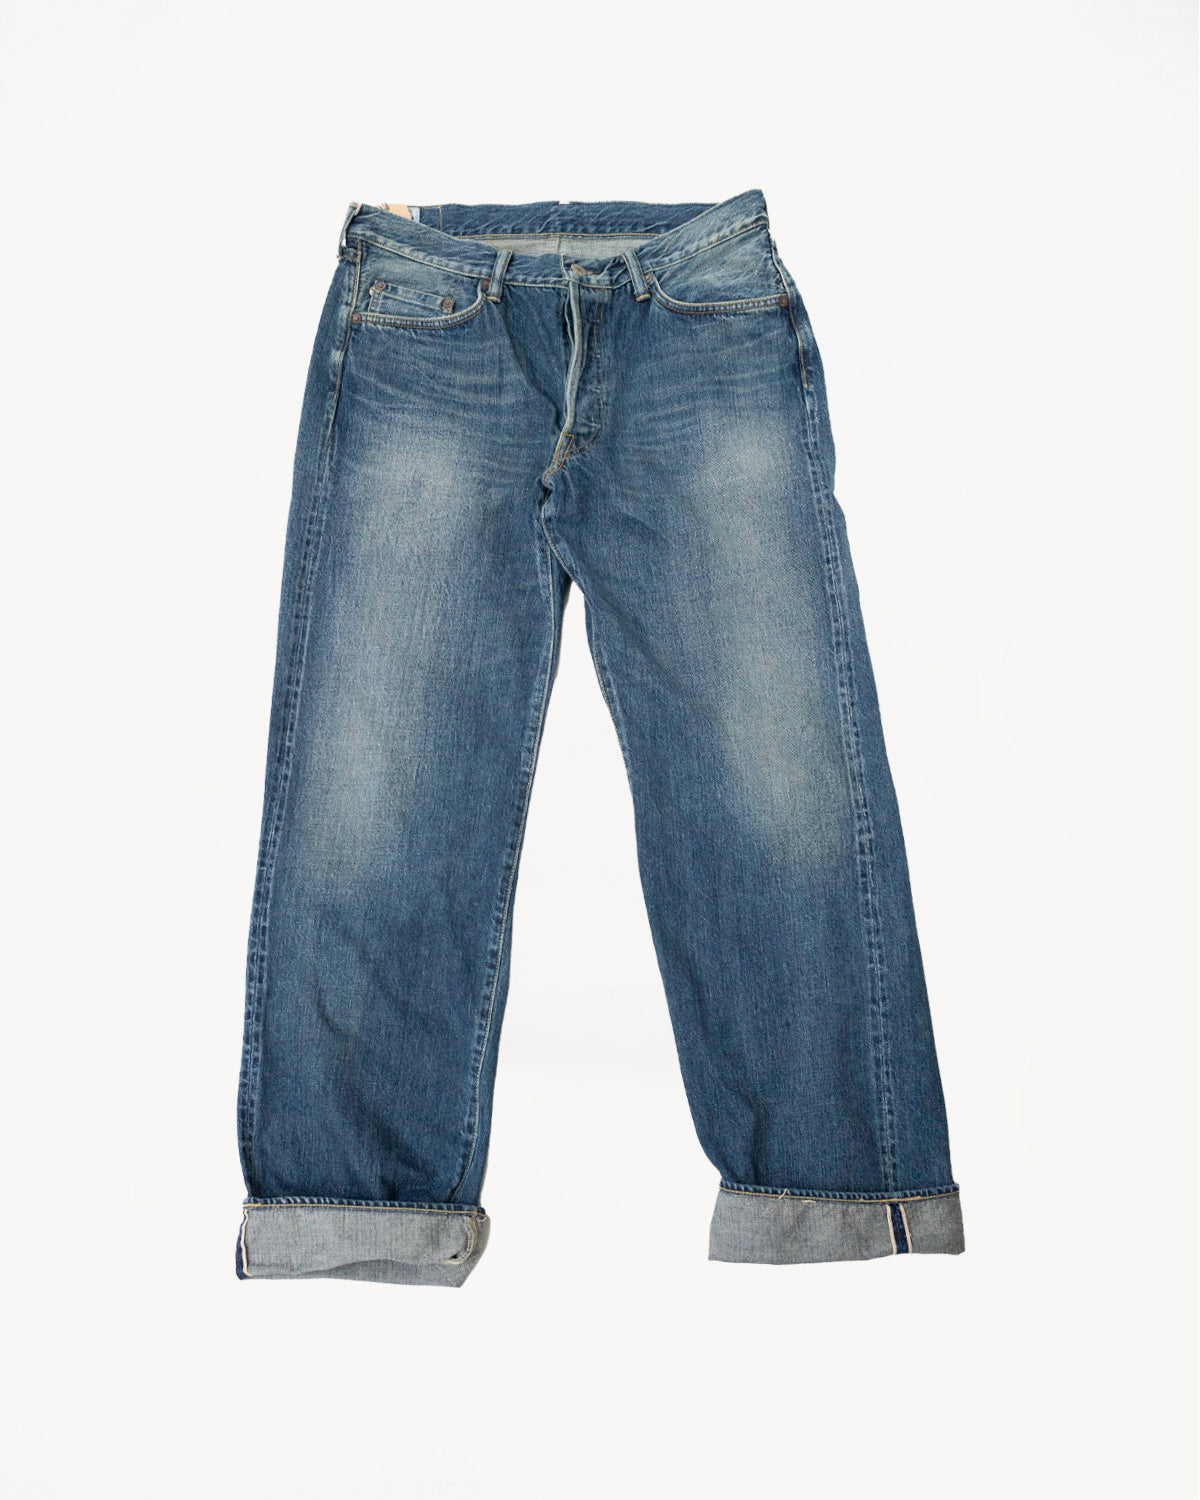 SD-DO1S - 15oz The Origin Selvedge Jeans Regular Straight - Natural